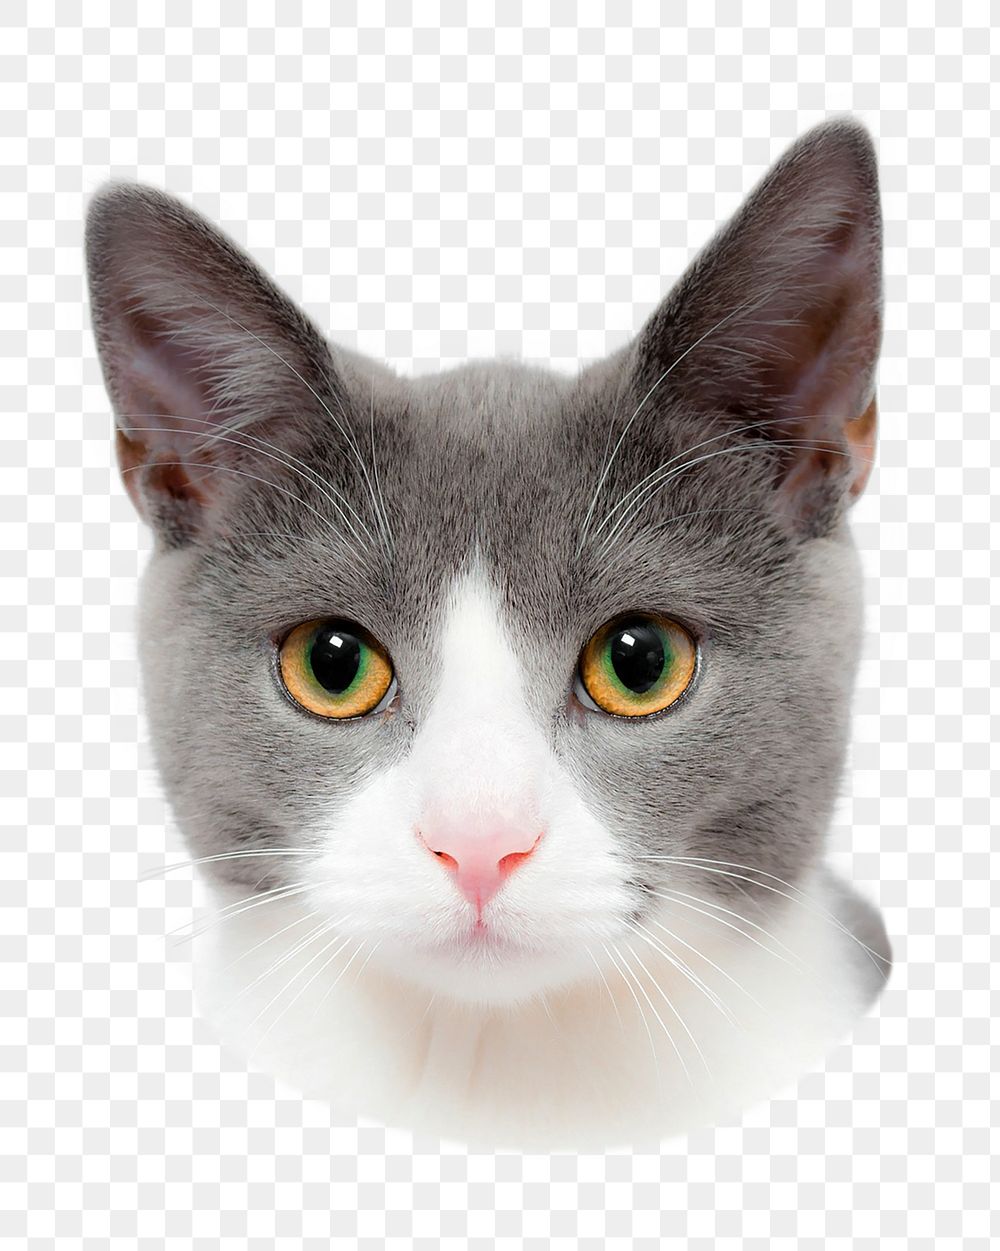 Cute cat png sticker, transparent background